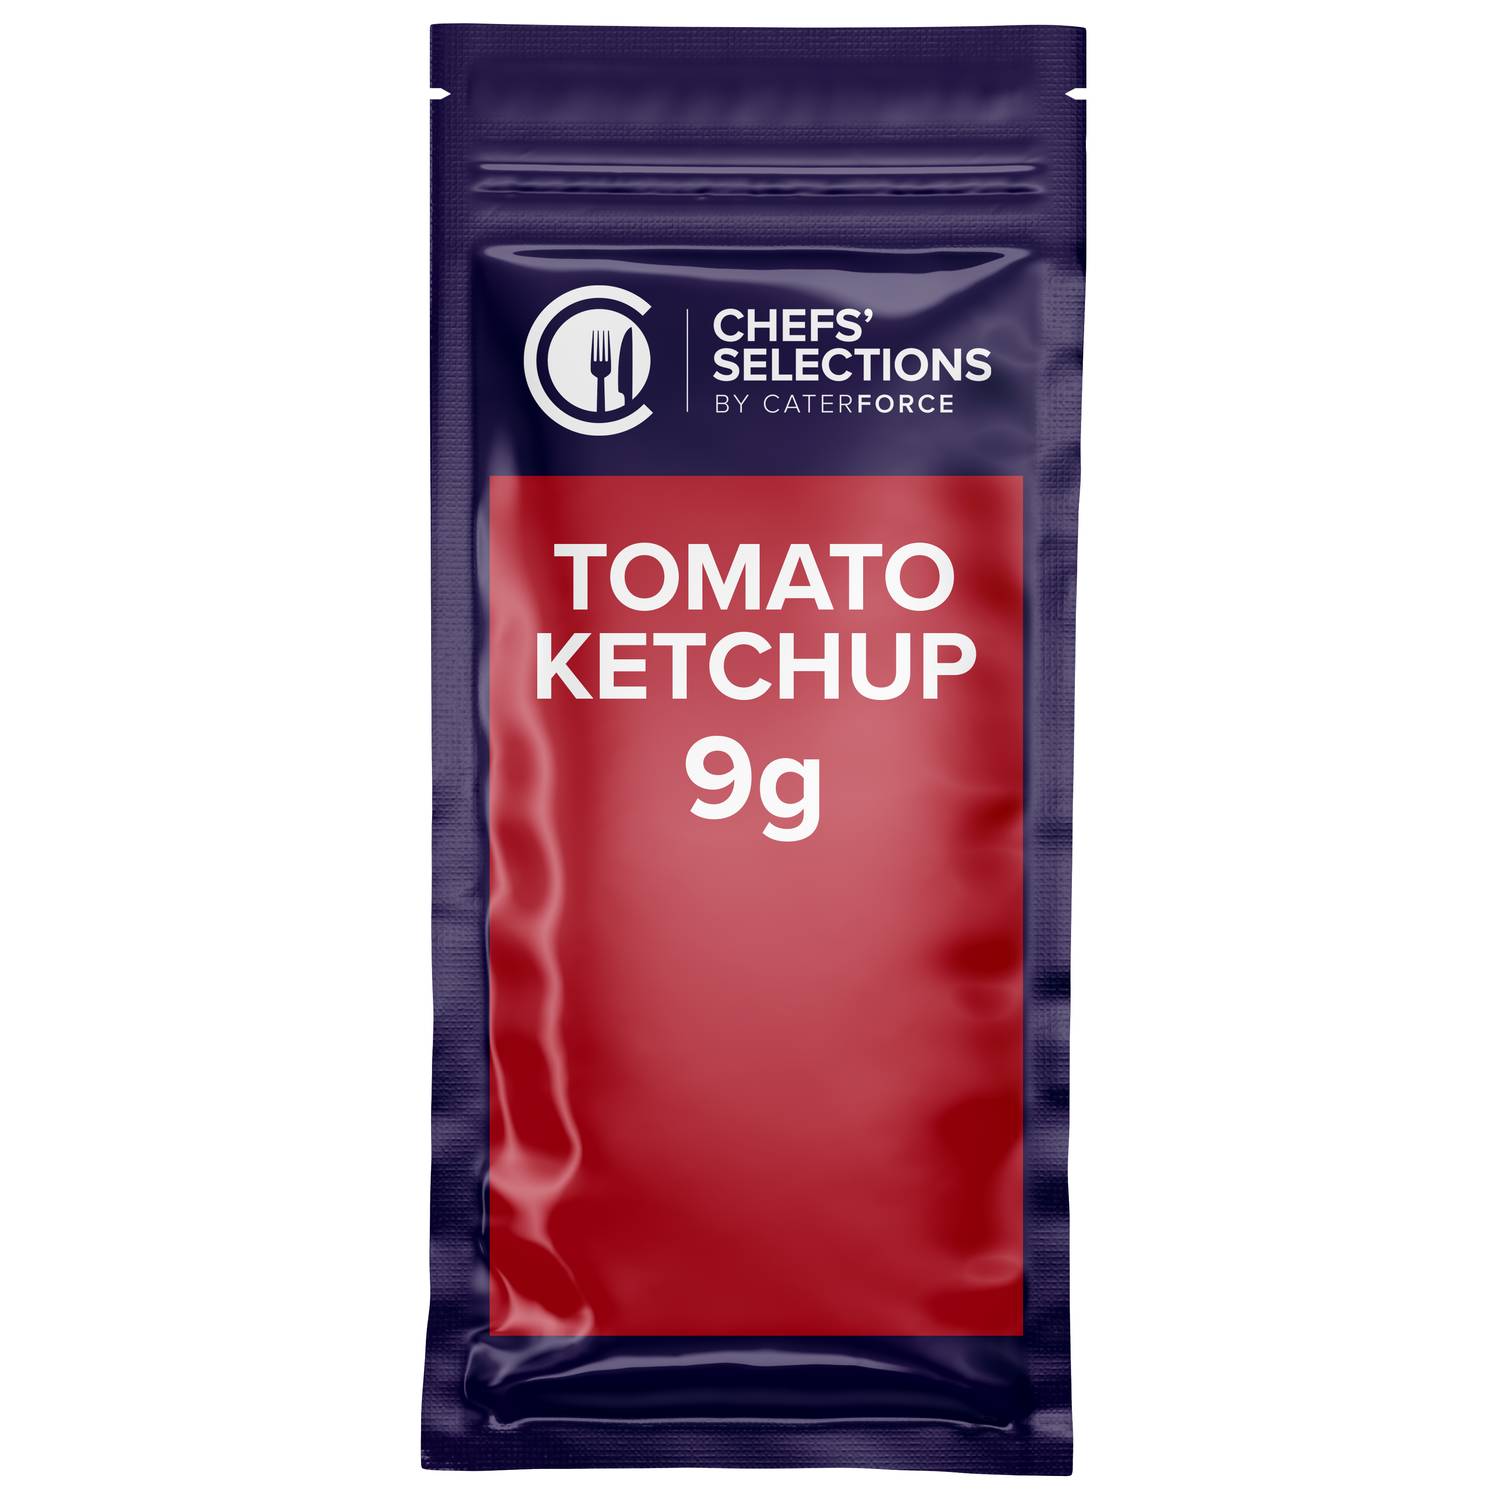 Chefs’ Selections Tomato Ketchup Sachet (200 x 9g)